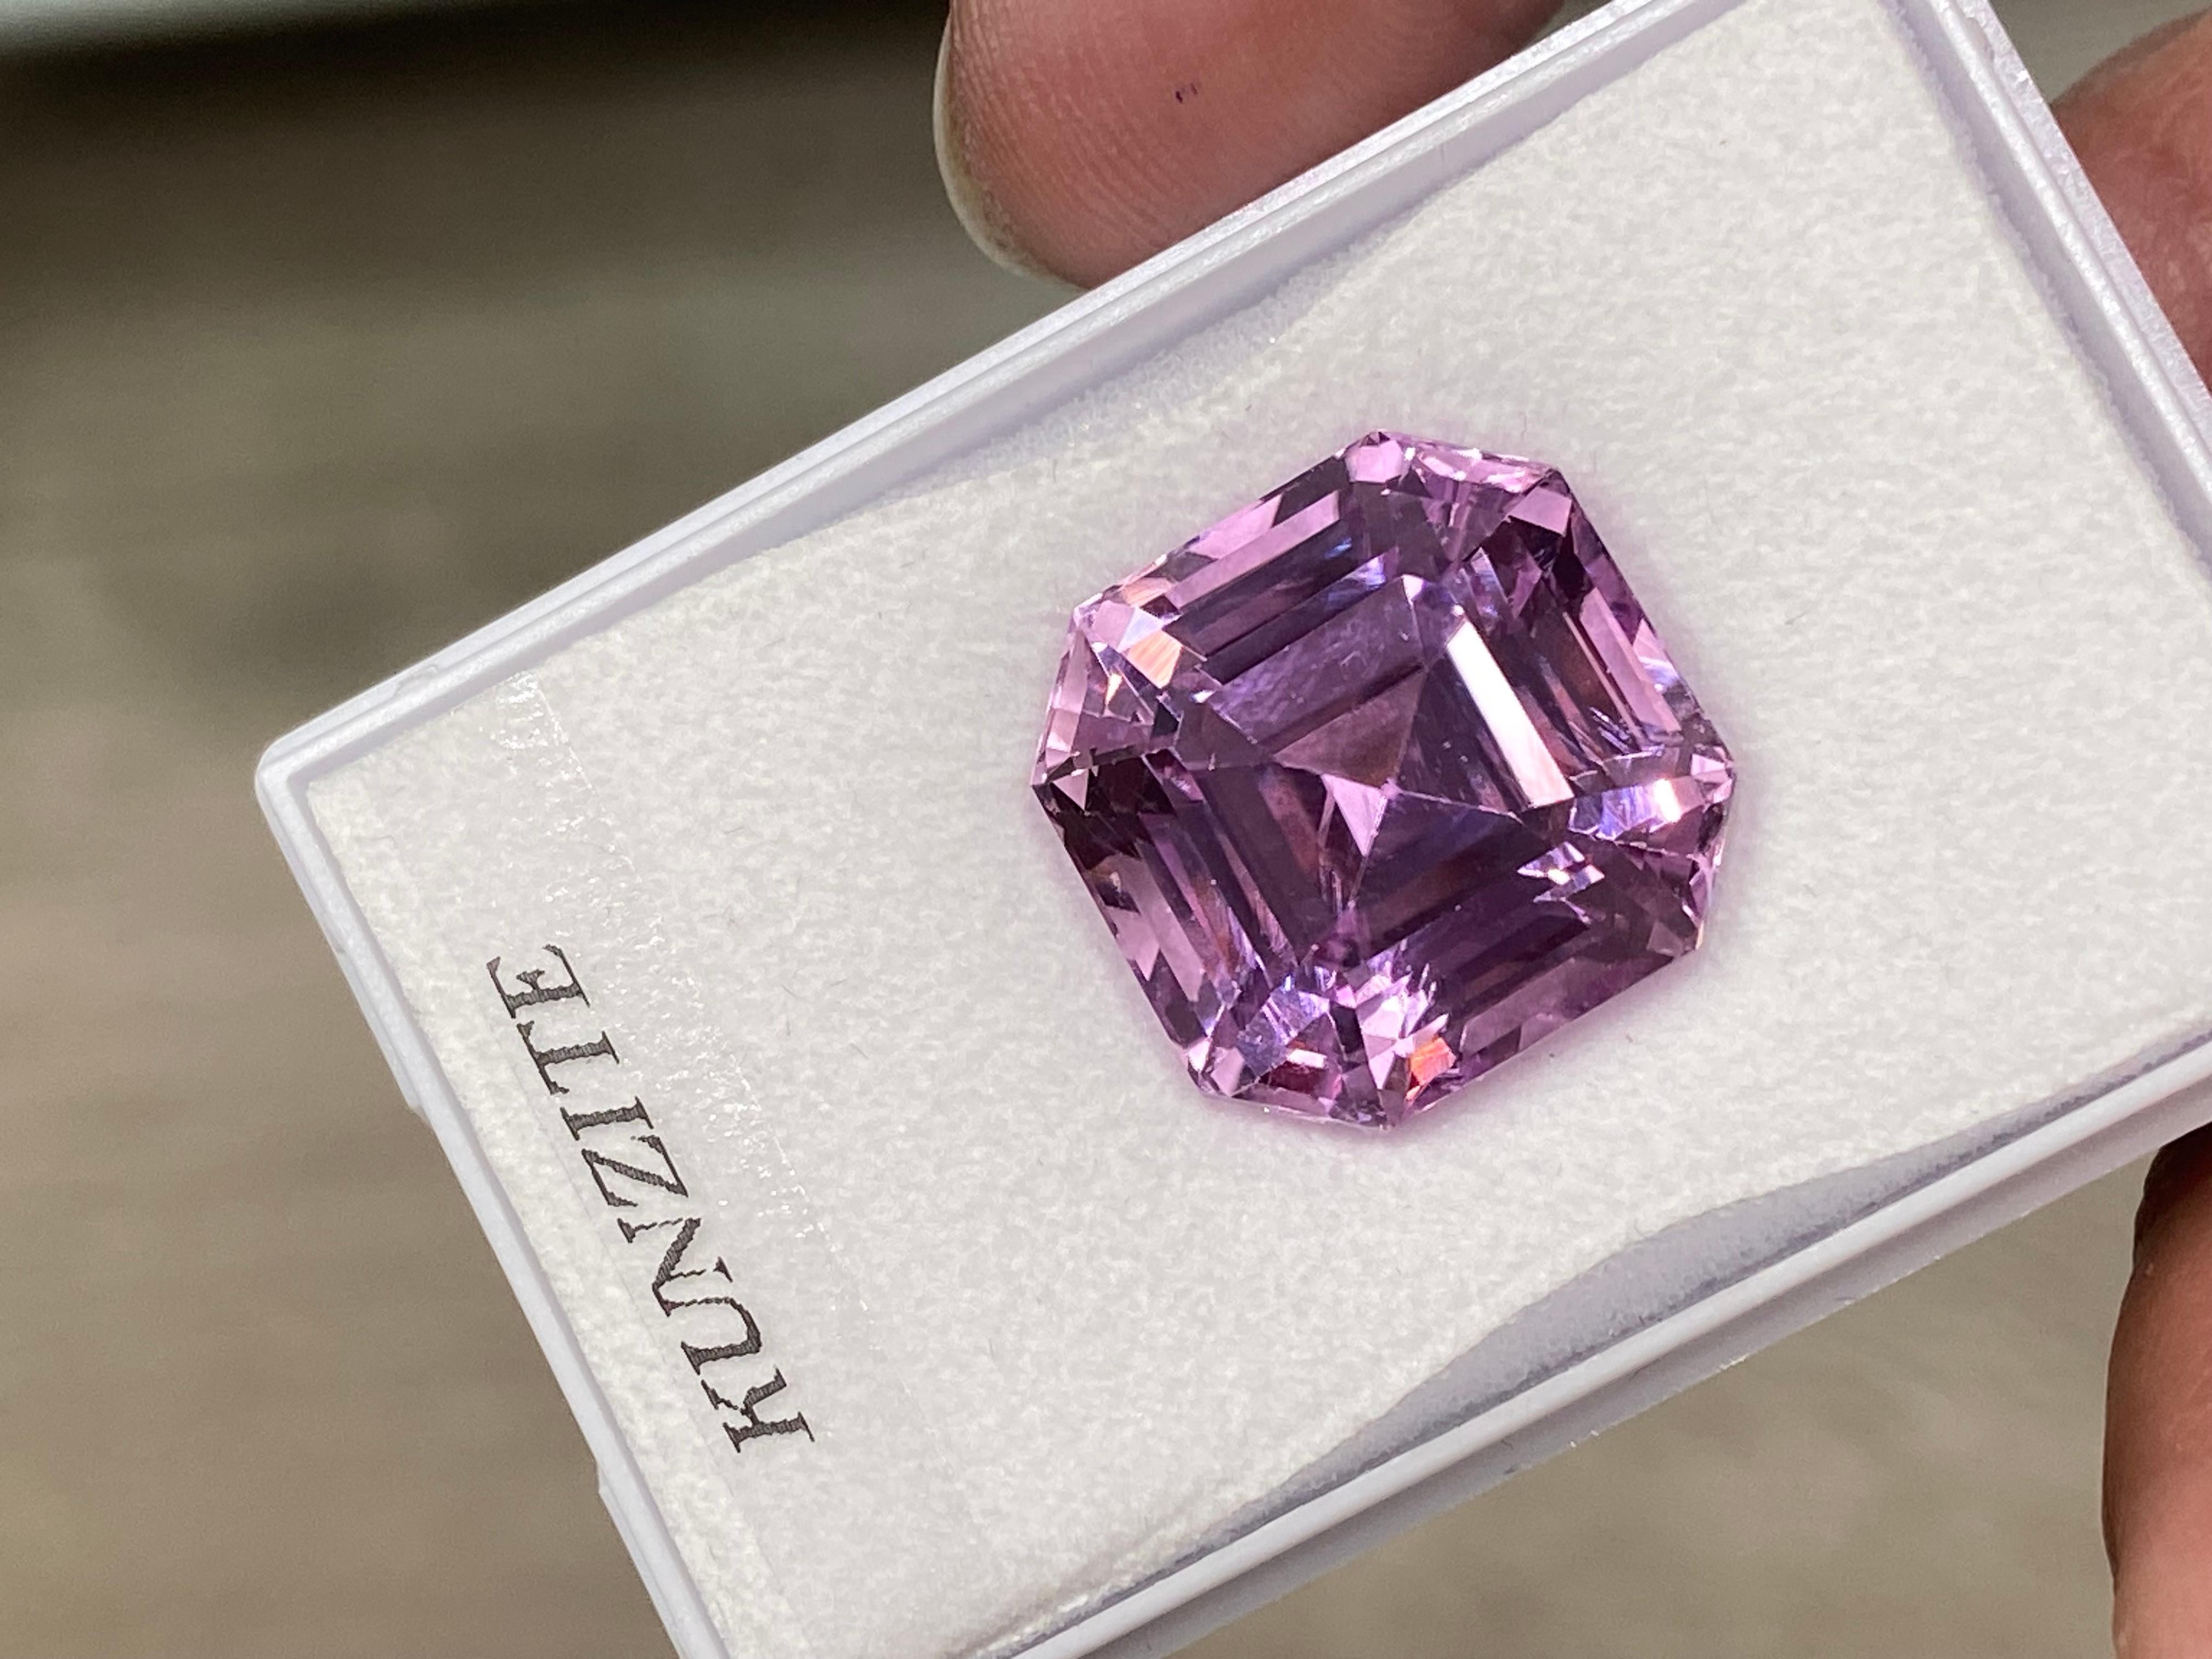 La Kunzite rose lavande de 33,49 carats, d'une richesse resplendissante, est mise en valeur dans une magnifique bague en or blanc et rose 18 carats. 

Ce bijou sensationnellement scintillant est serti de diamants blancs étincelants totalisant 0,47